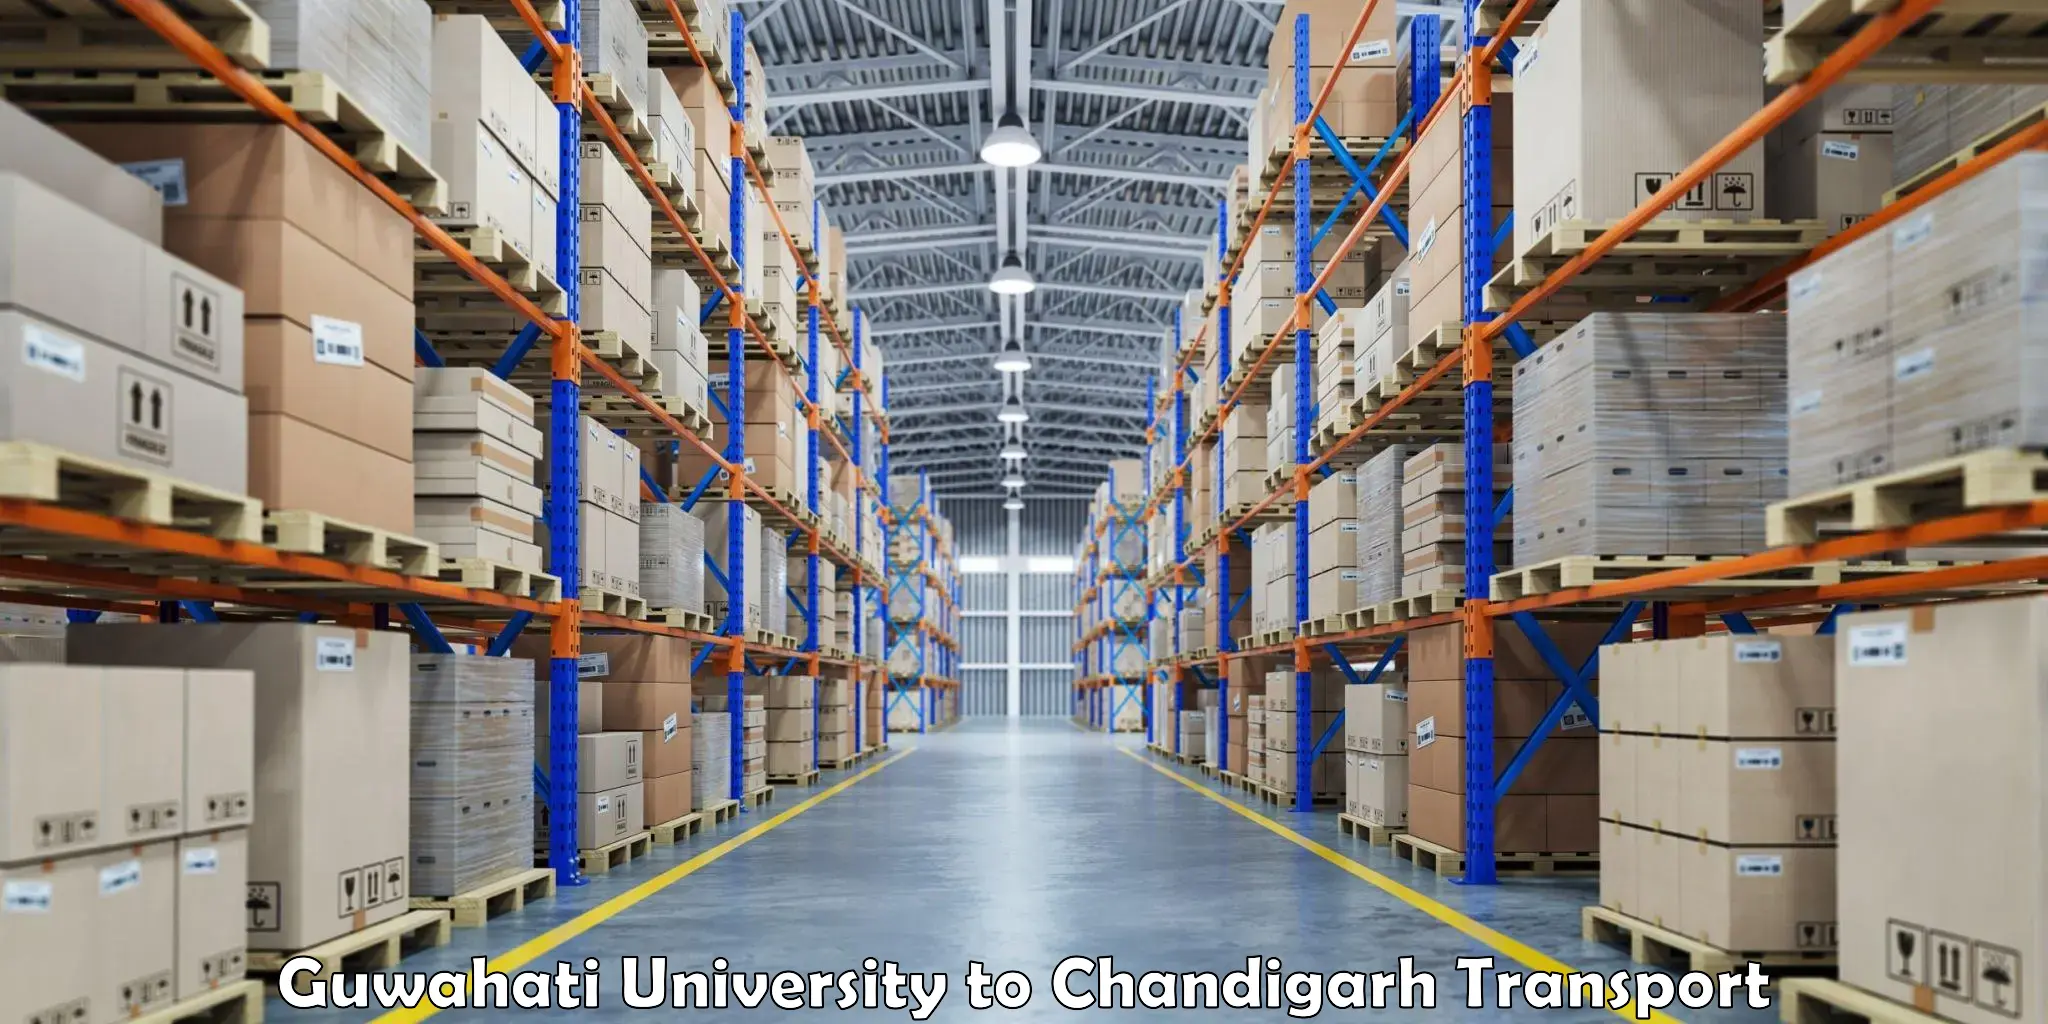 Pick up transport service Guwahati University to Chandigarh